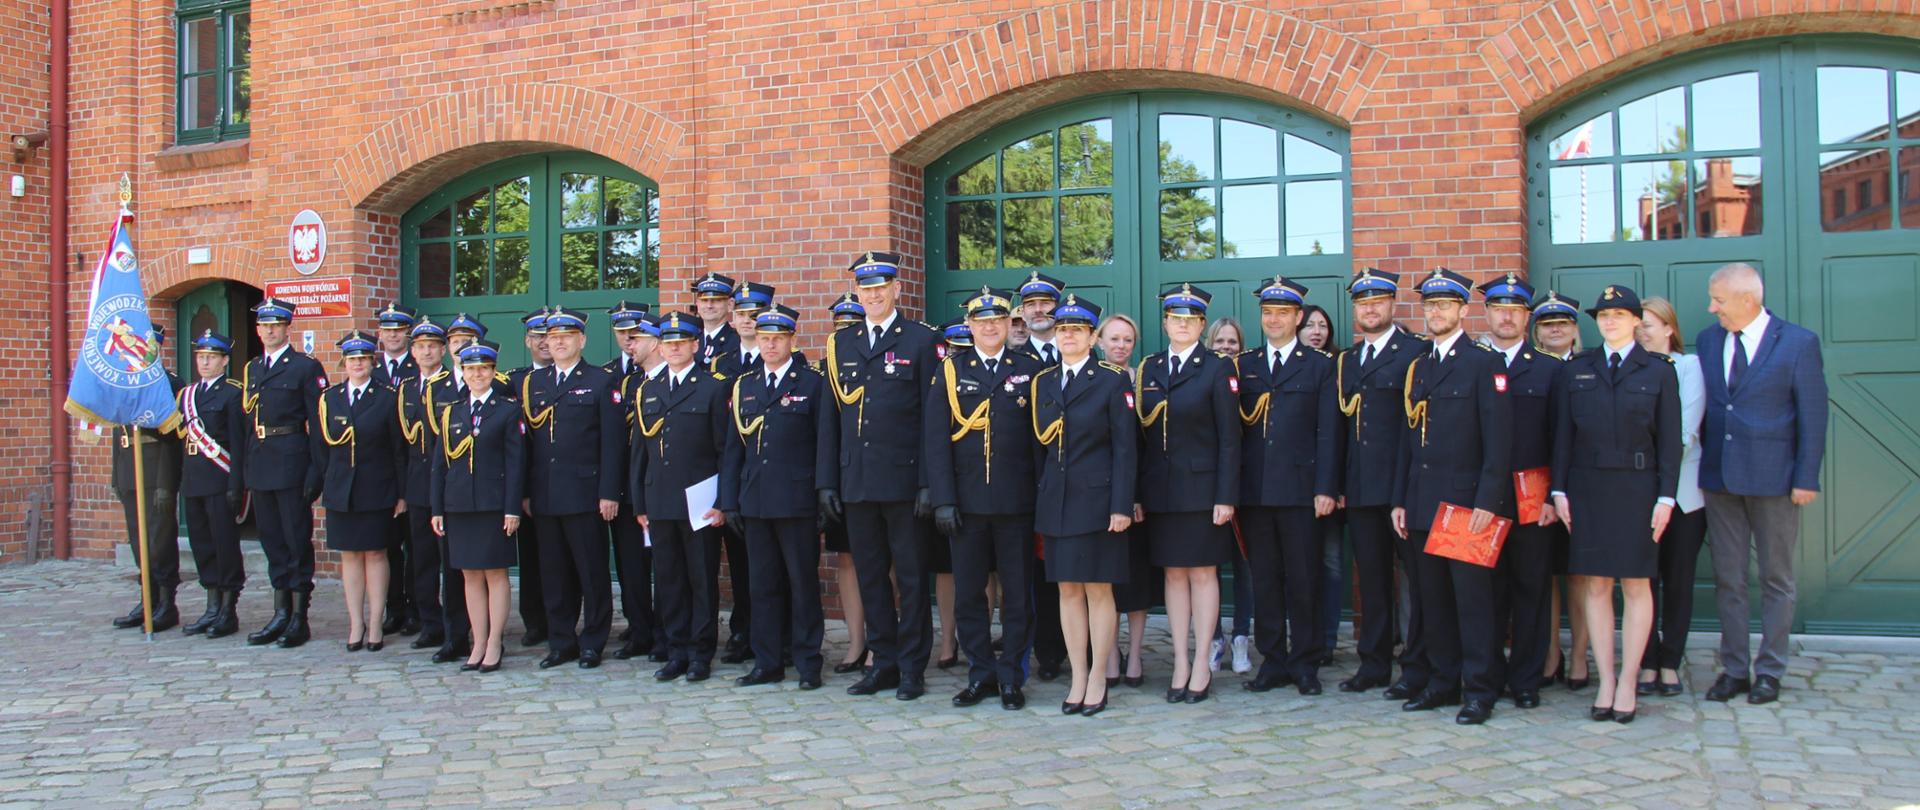 Zdjęcie grupowe pracowników KW PSP Toruń. Za nimi budynek siedziby. Z lewej strony poczet sztandarowy.